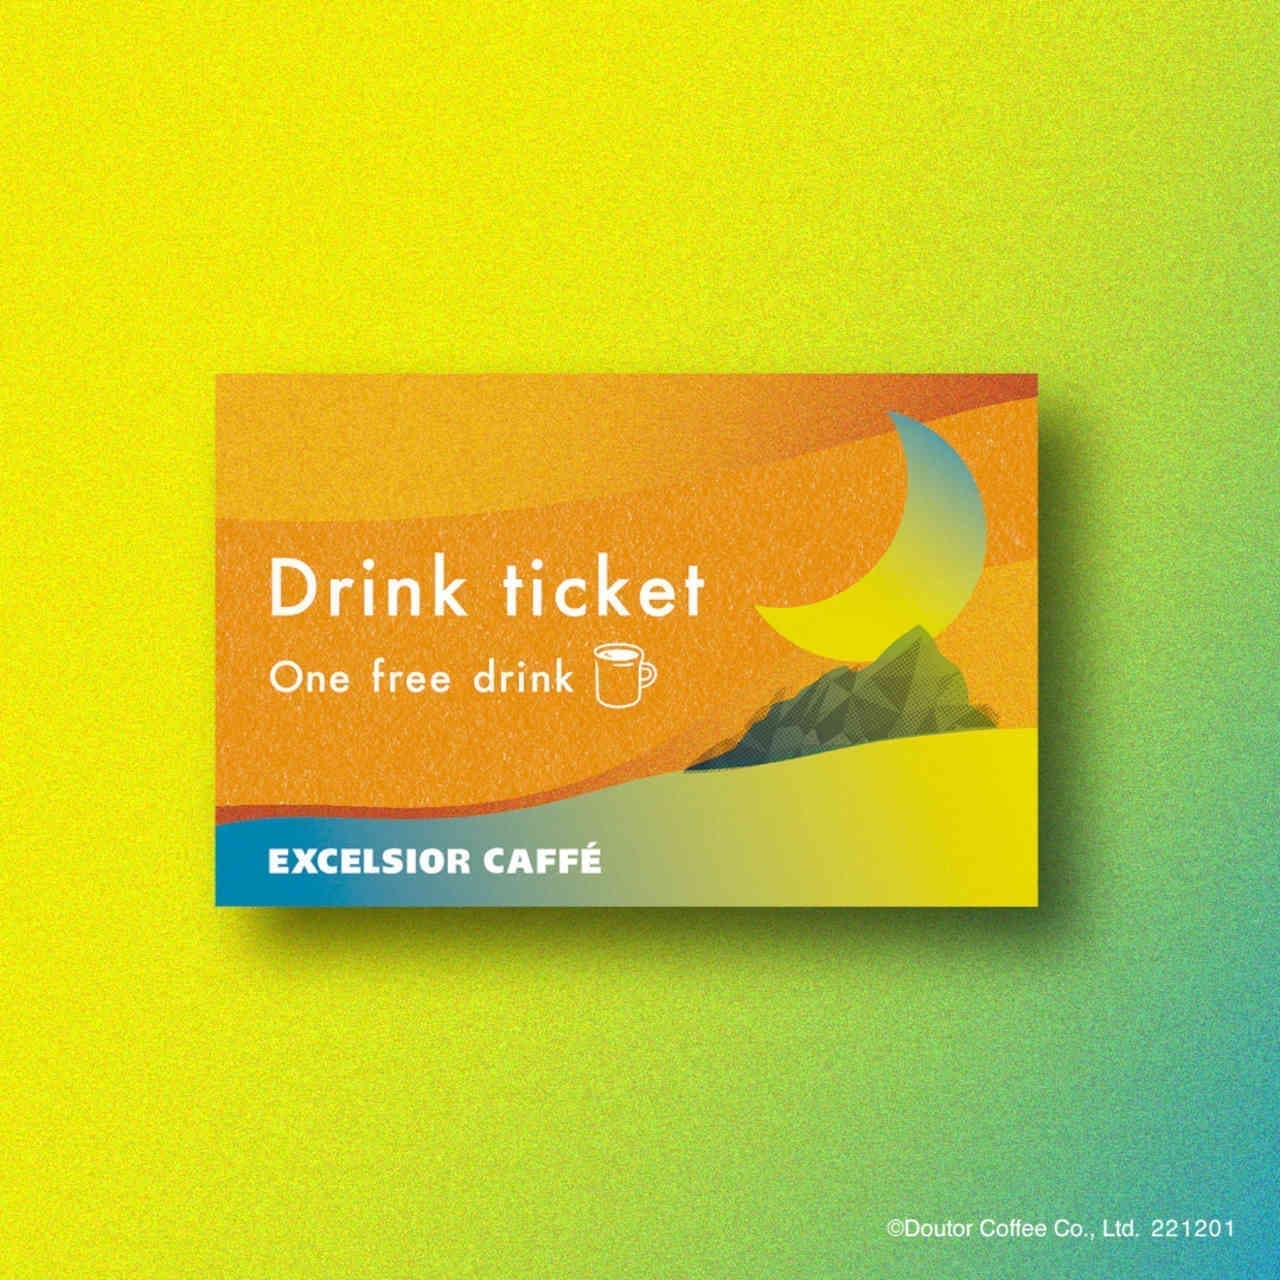 Excelsior Cafe "Drink Ticket